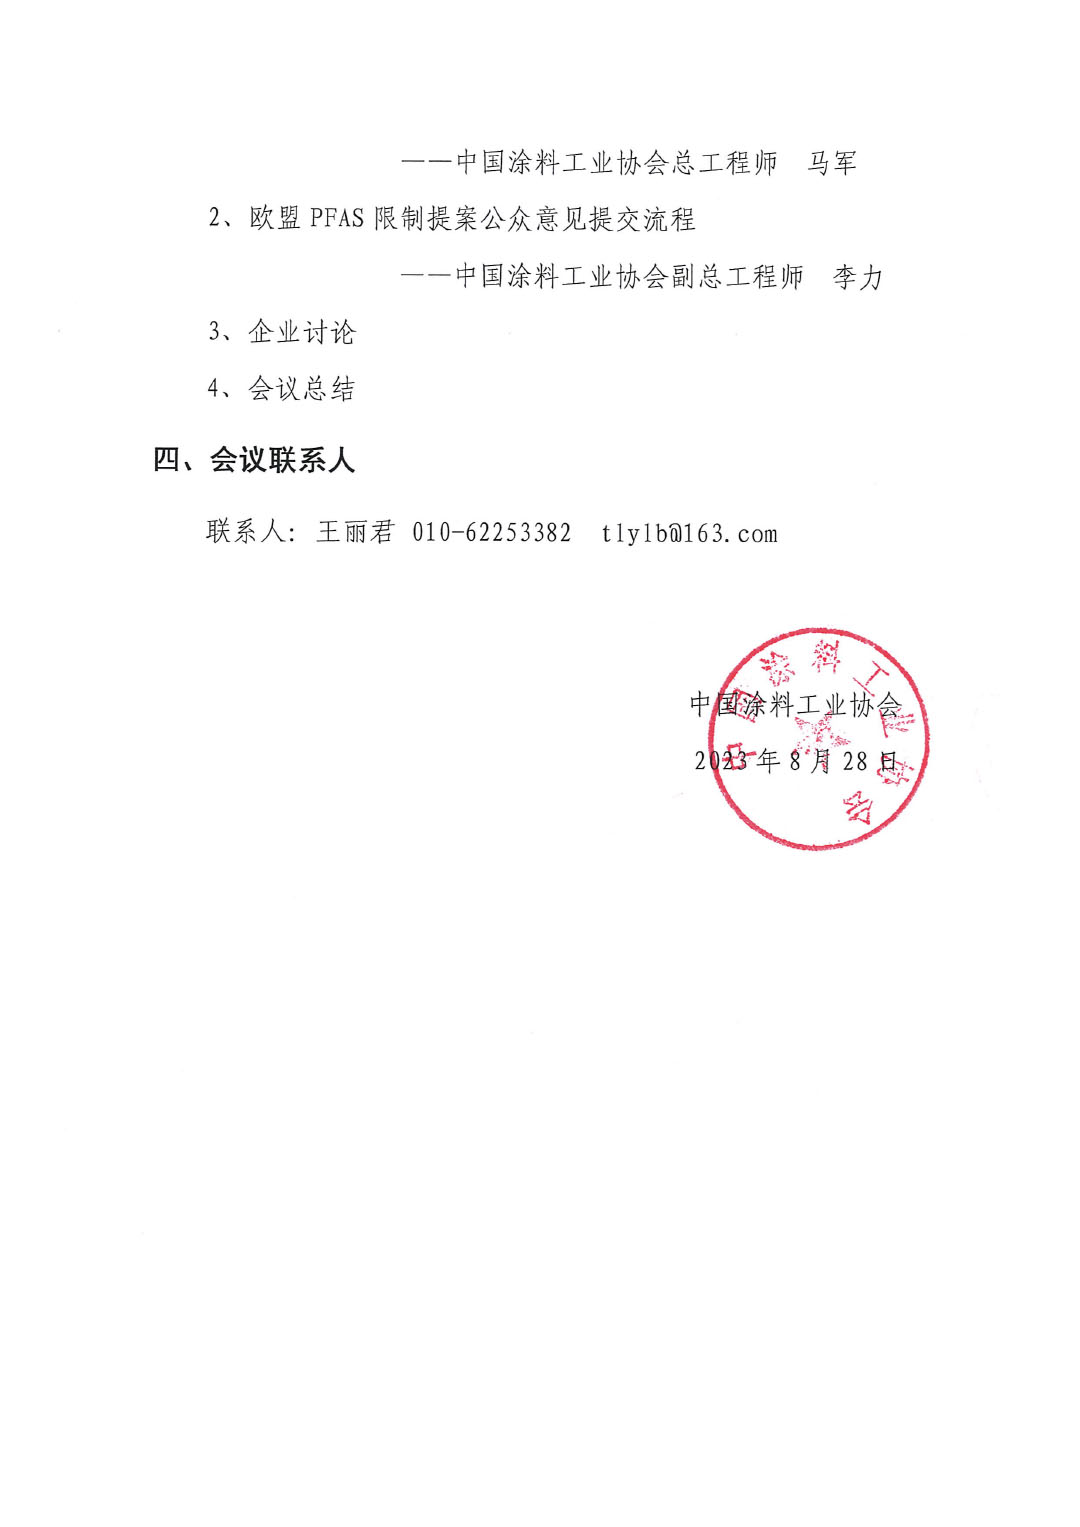 盖章--中国涂料工业协会关于PFAS限制应对线上培训、交流会的通知-3